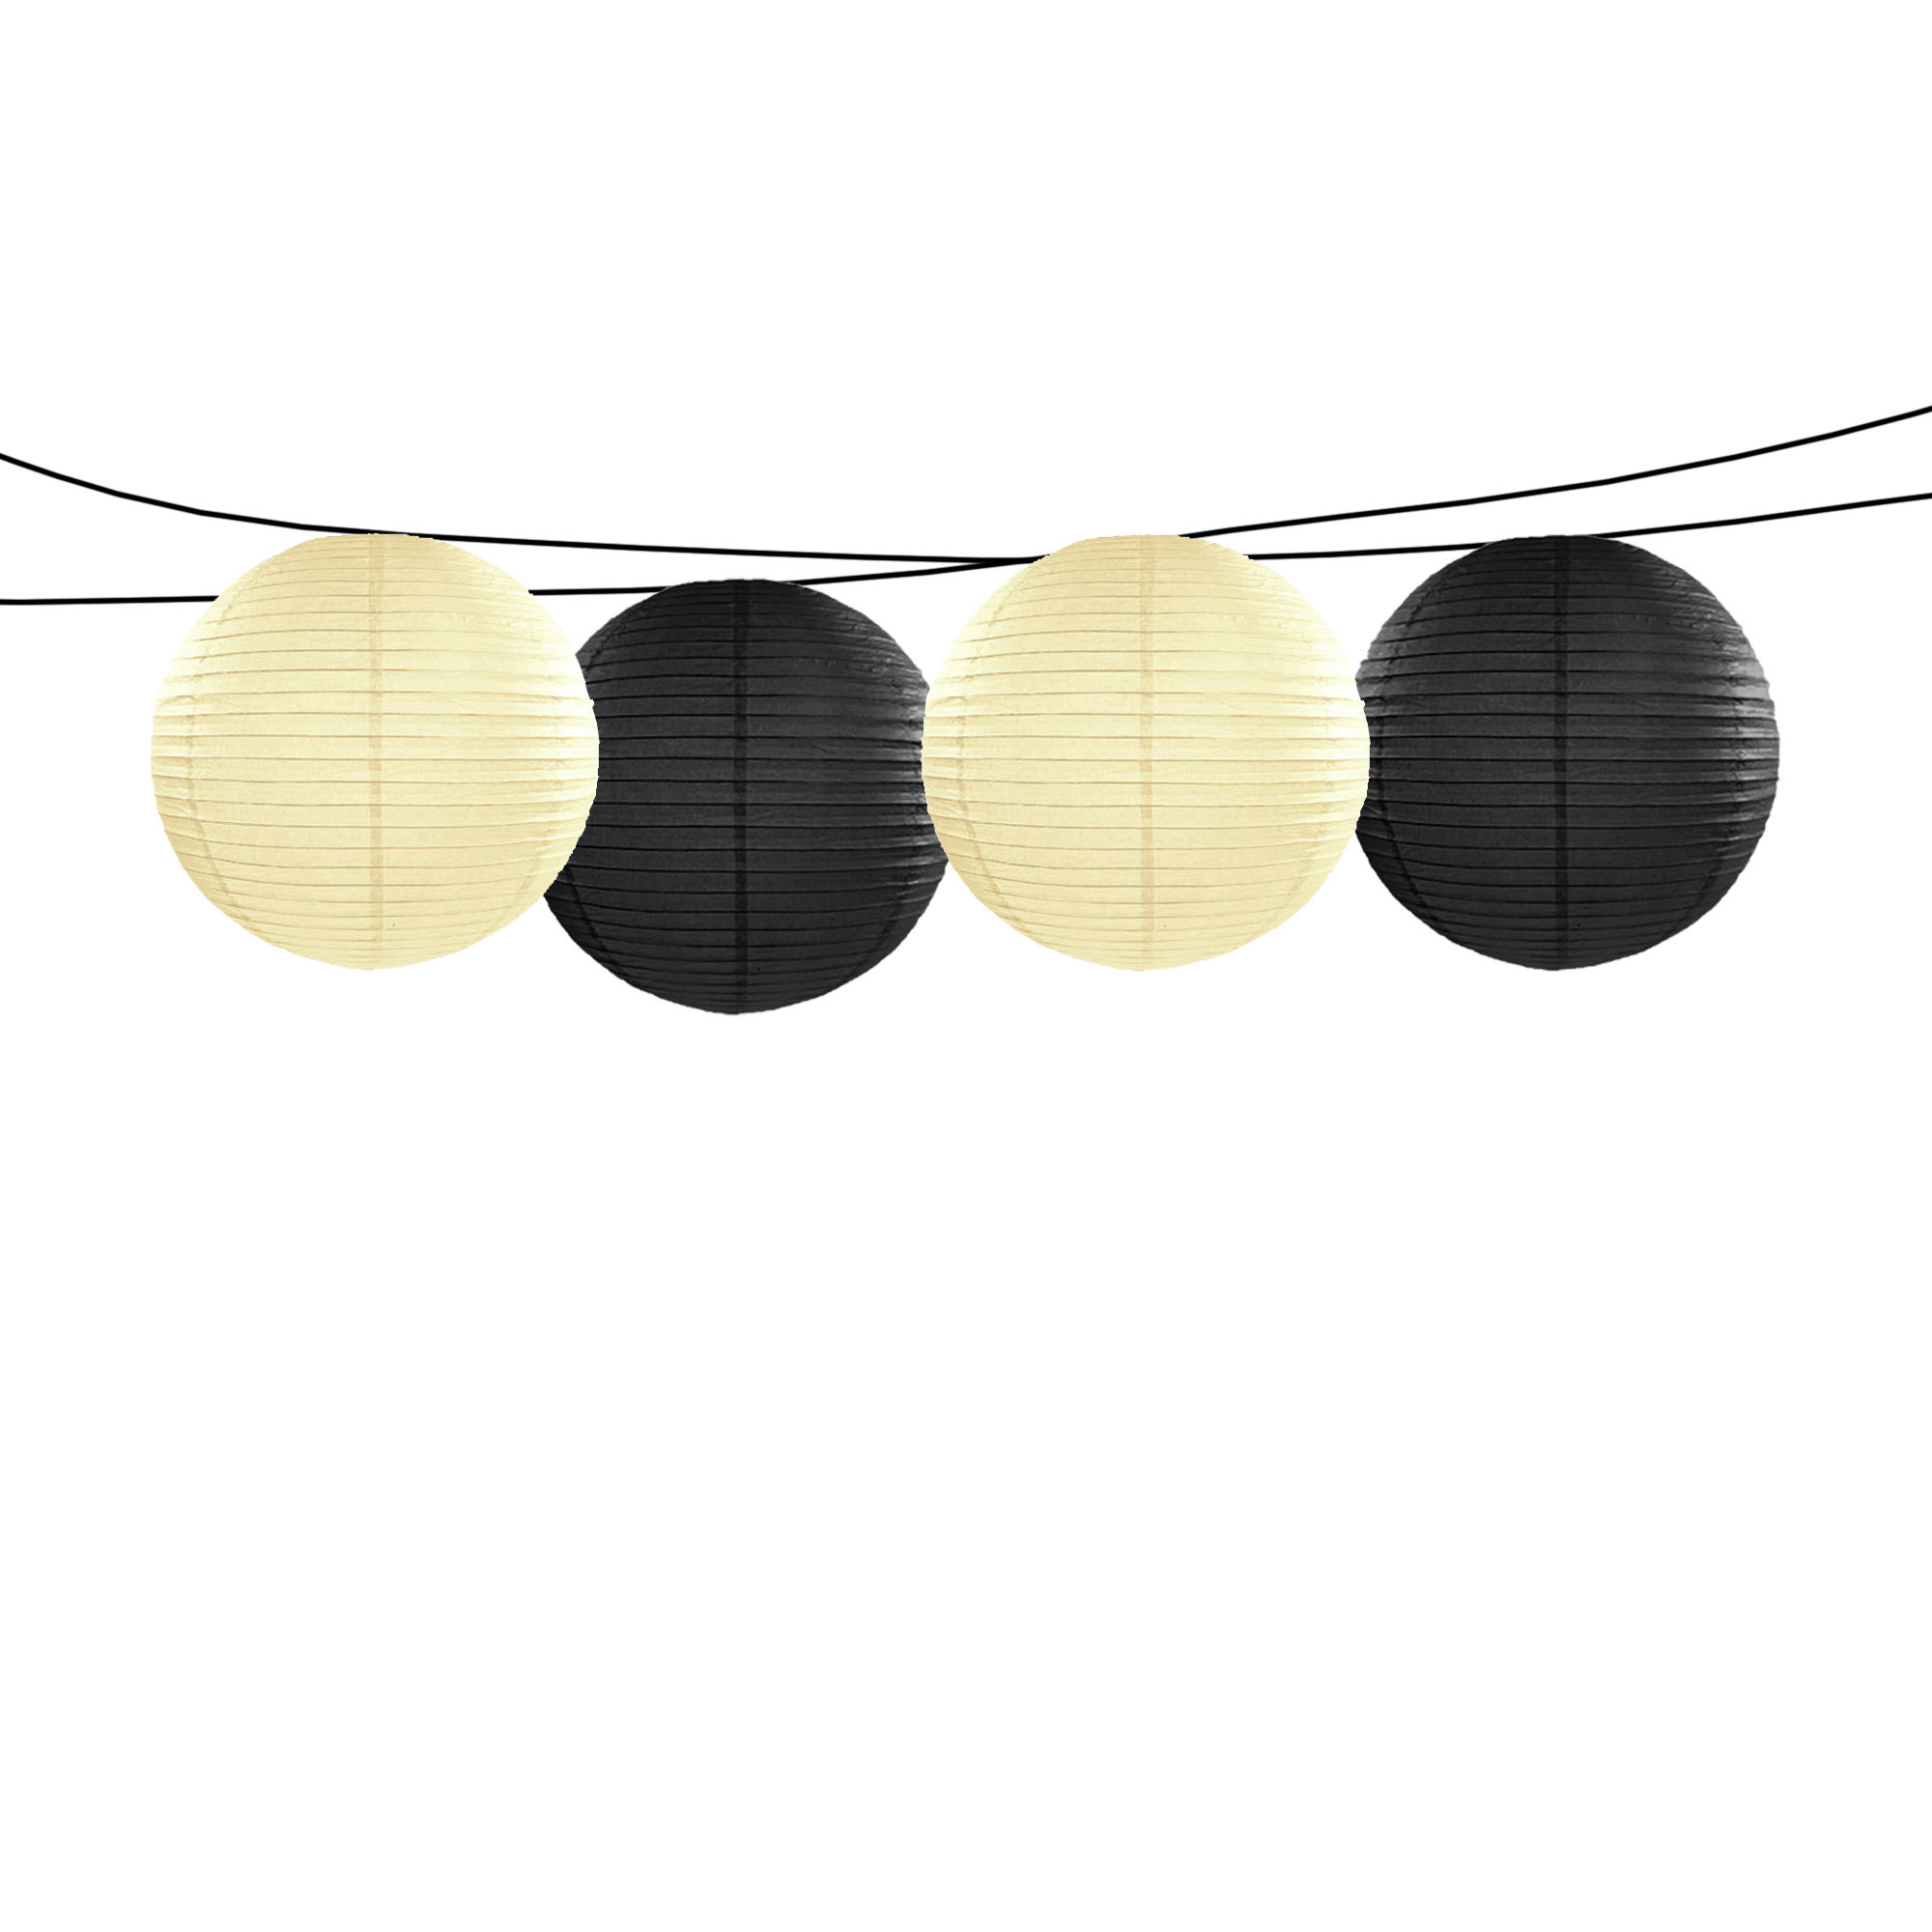 Feest-tuin versiering 4x stuks luxe bol-vorm lampionnen zwart en ivoor dia 35 cm